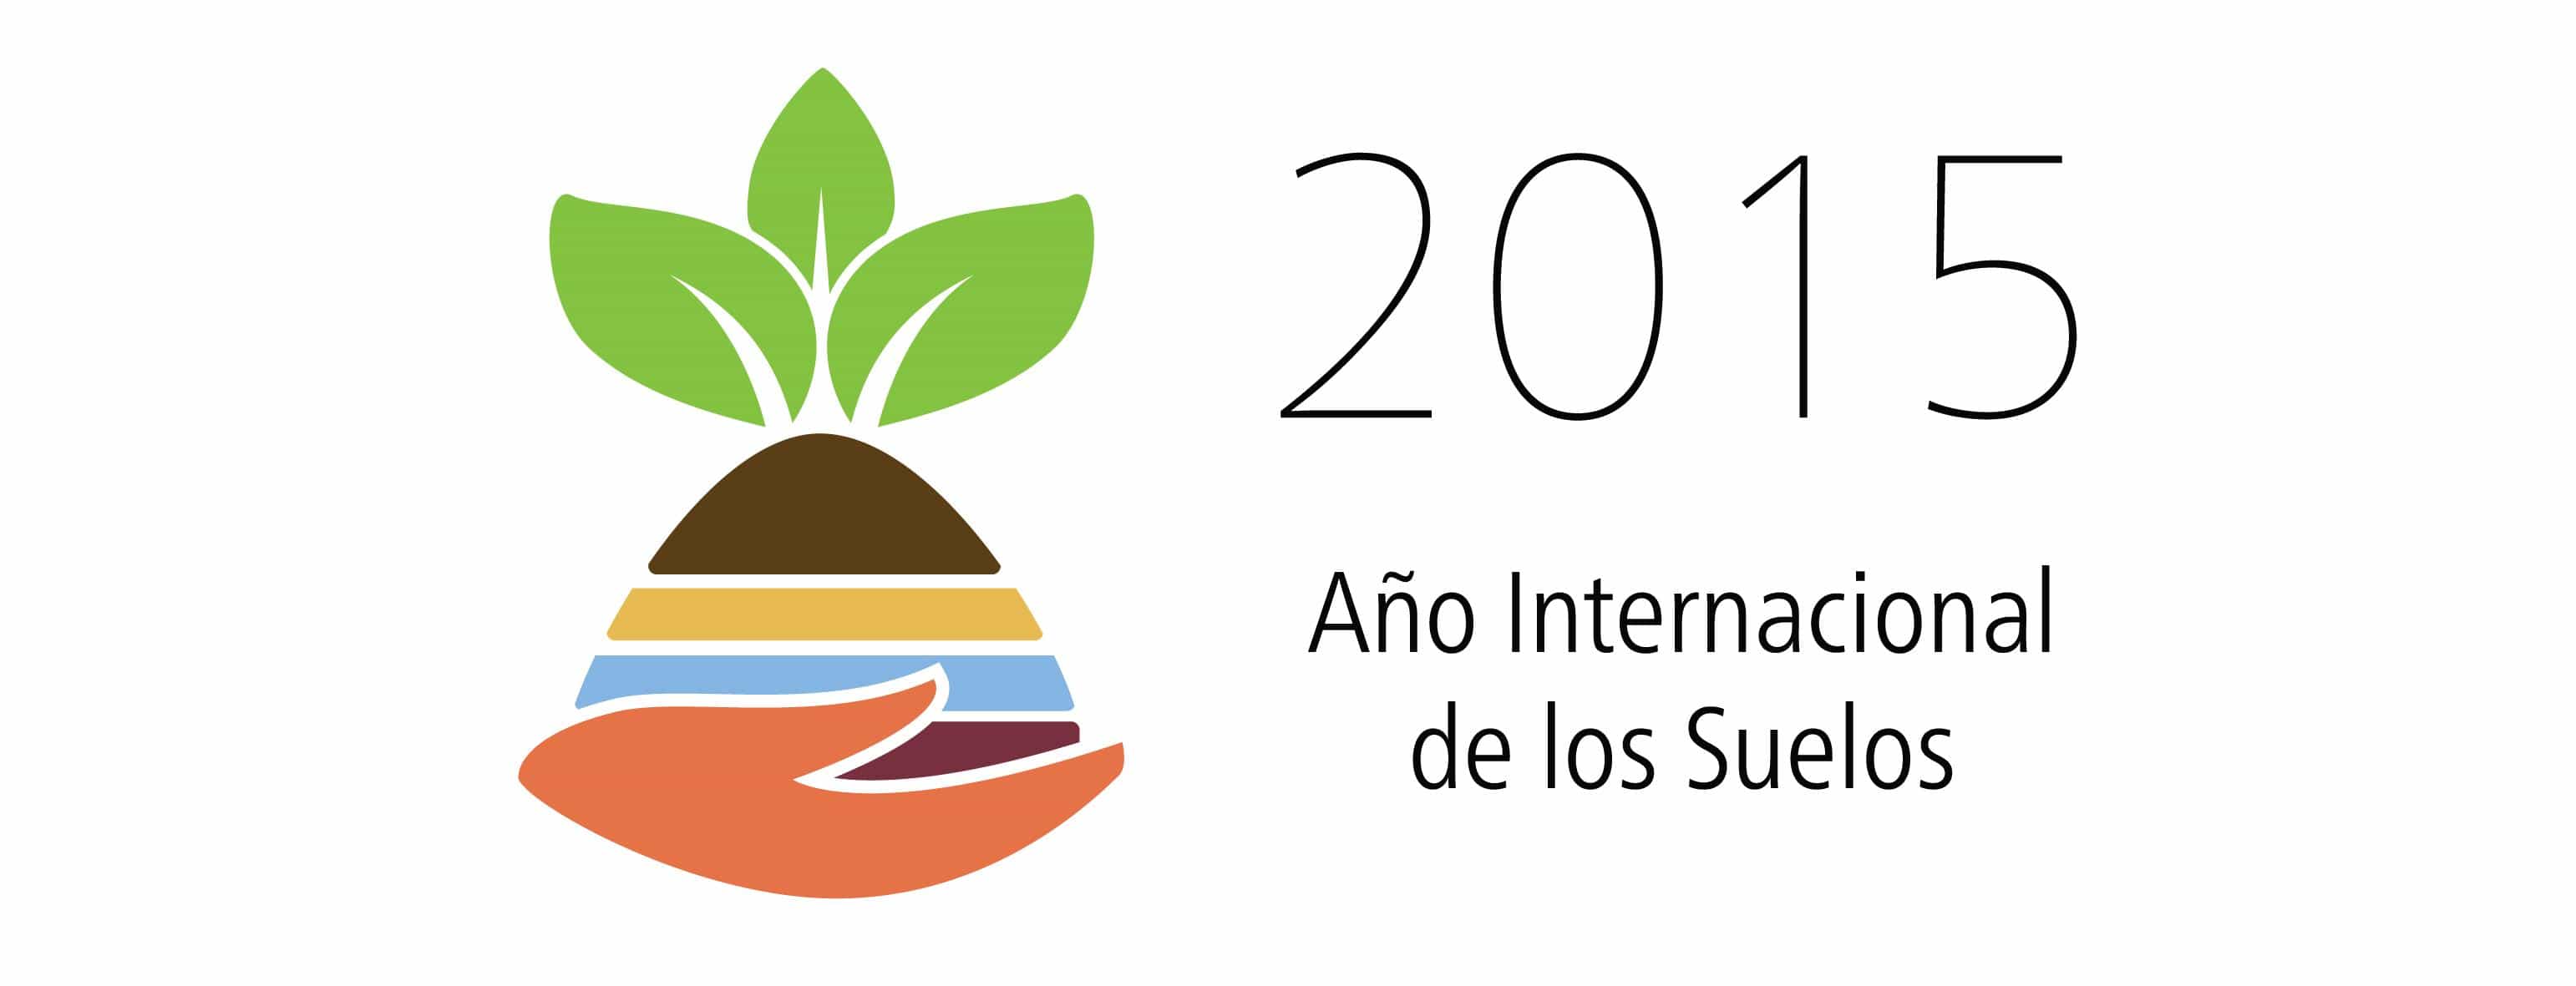 2015 año internacional de los suelos